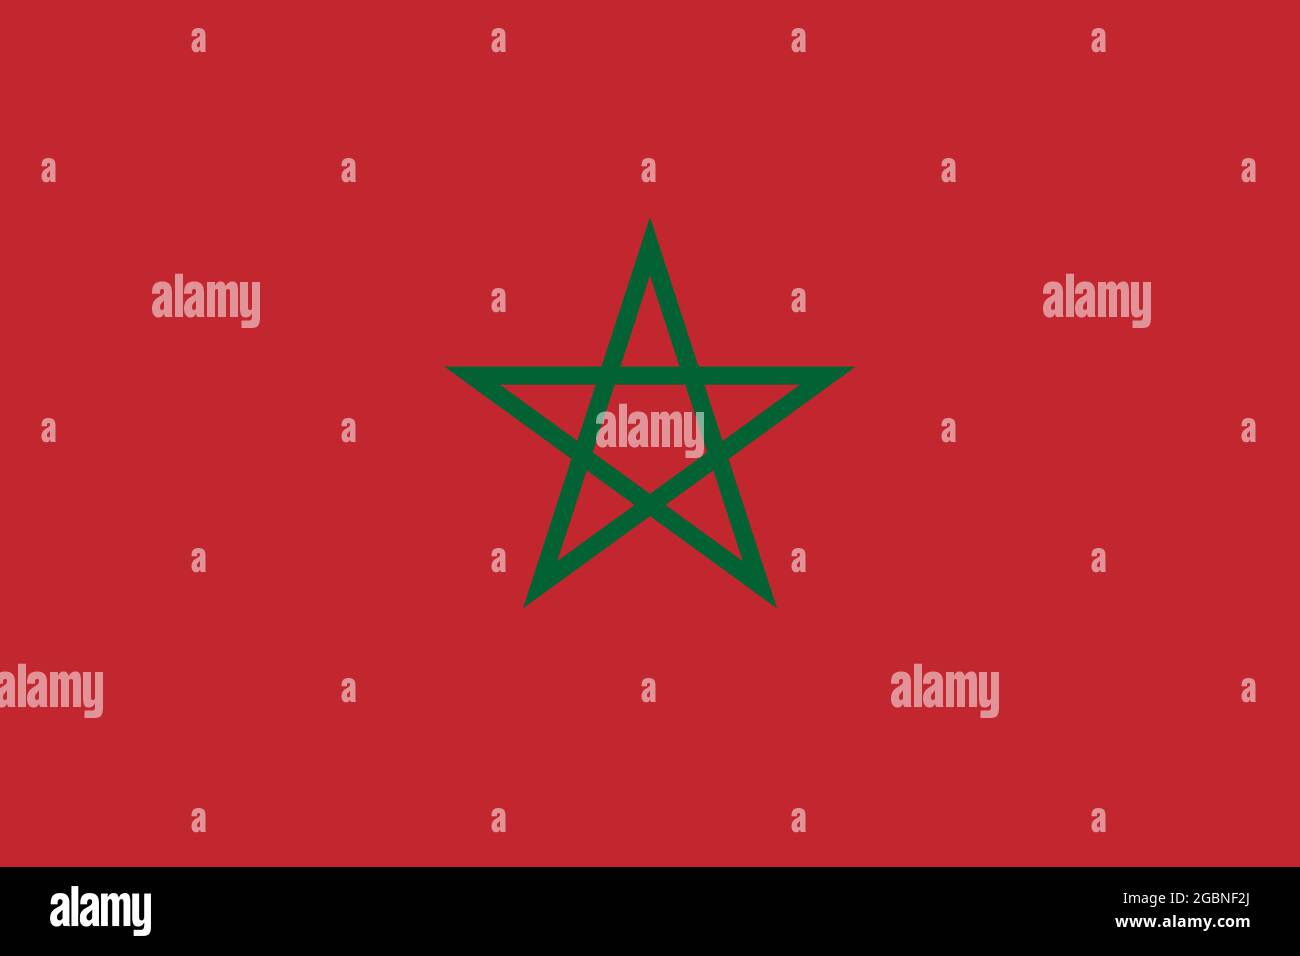 Nationale Flagge von Marokko Originalgröße und Farben Vektorgrafik, Königreich Marokko Flagge, grüne Smaragd Pentagramm Alaouite Dynastie, Marokkaner Stock Vektor